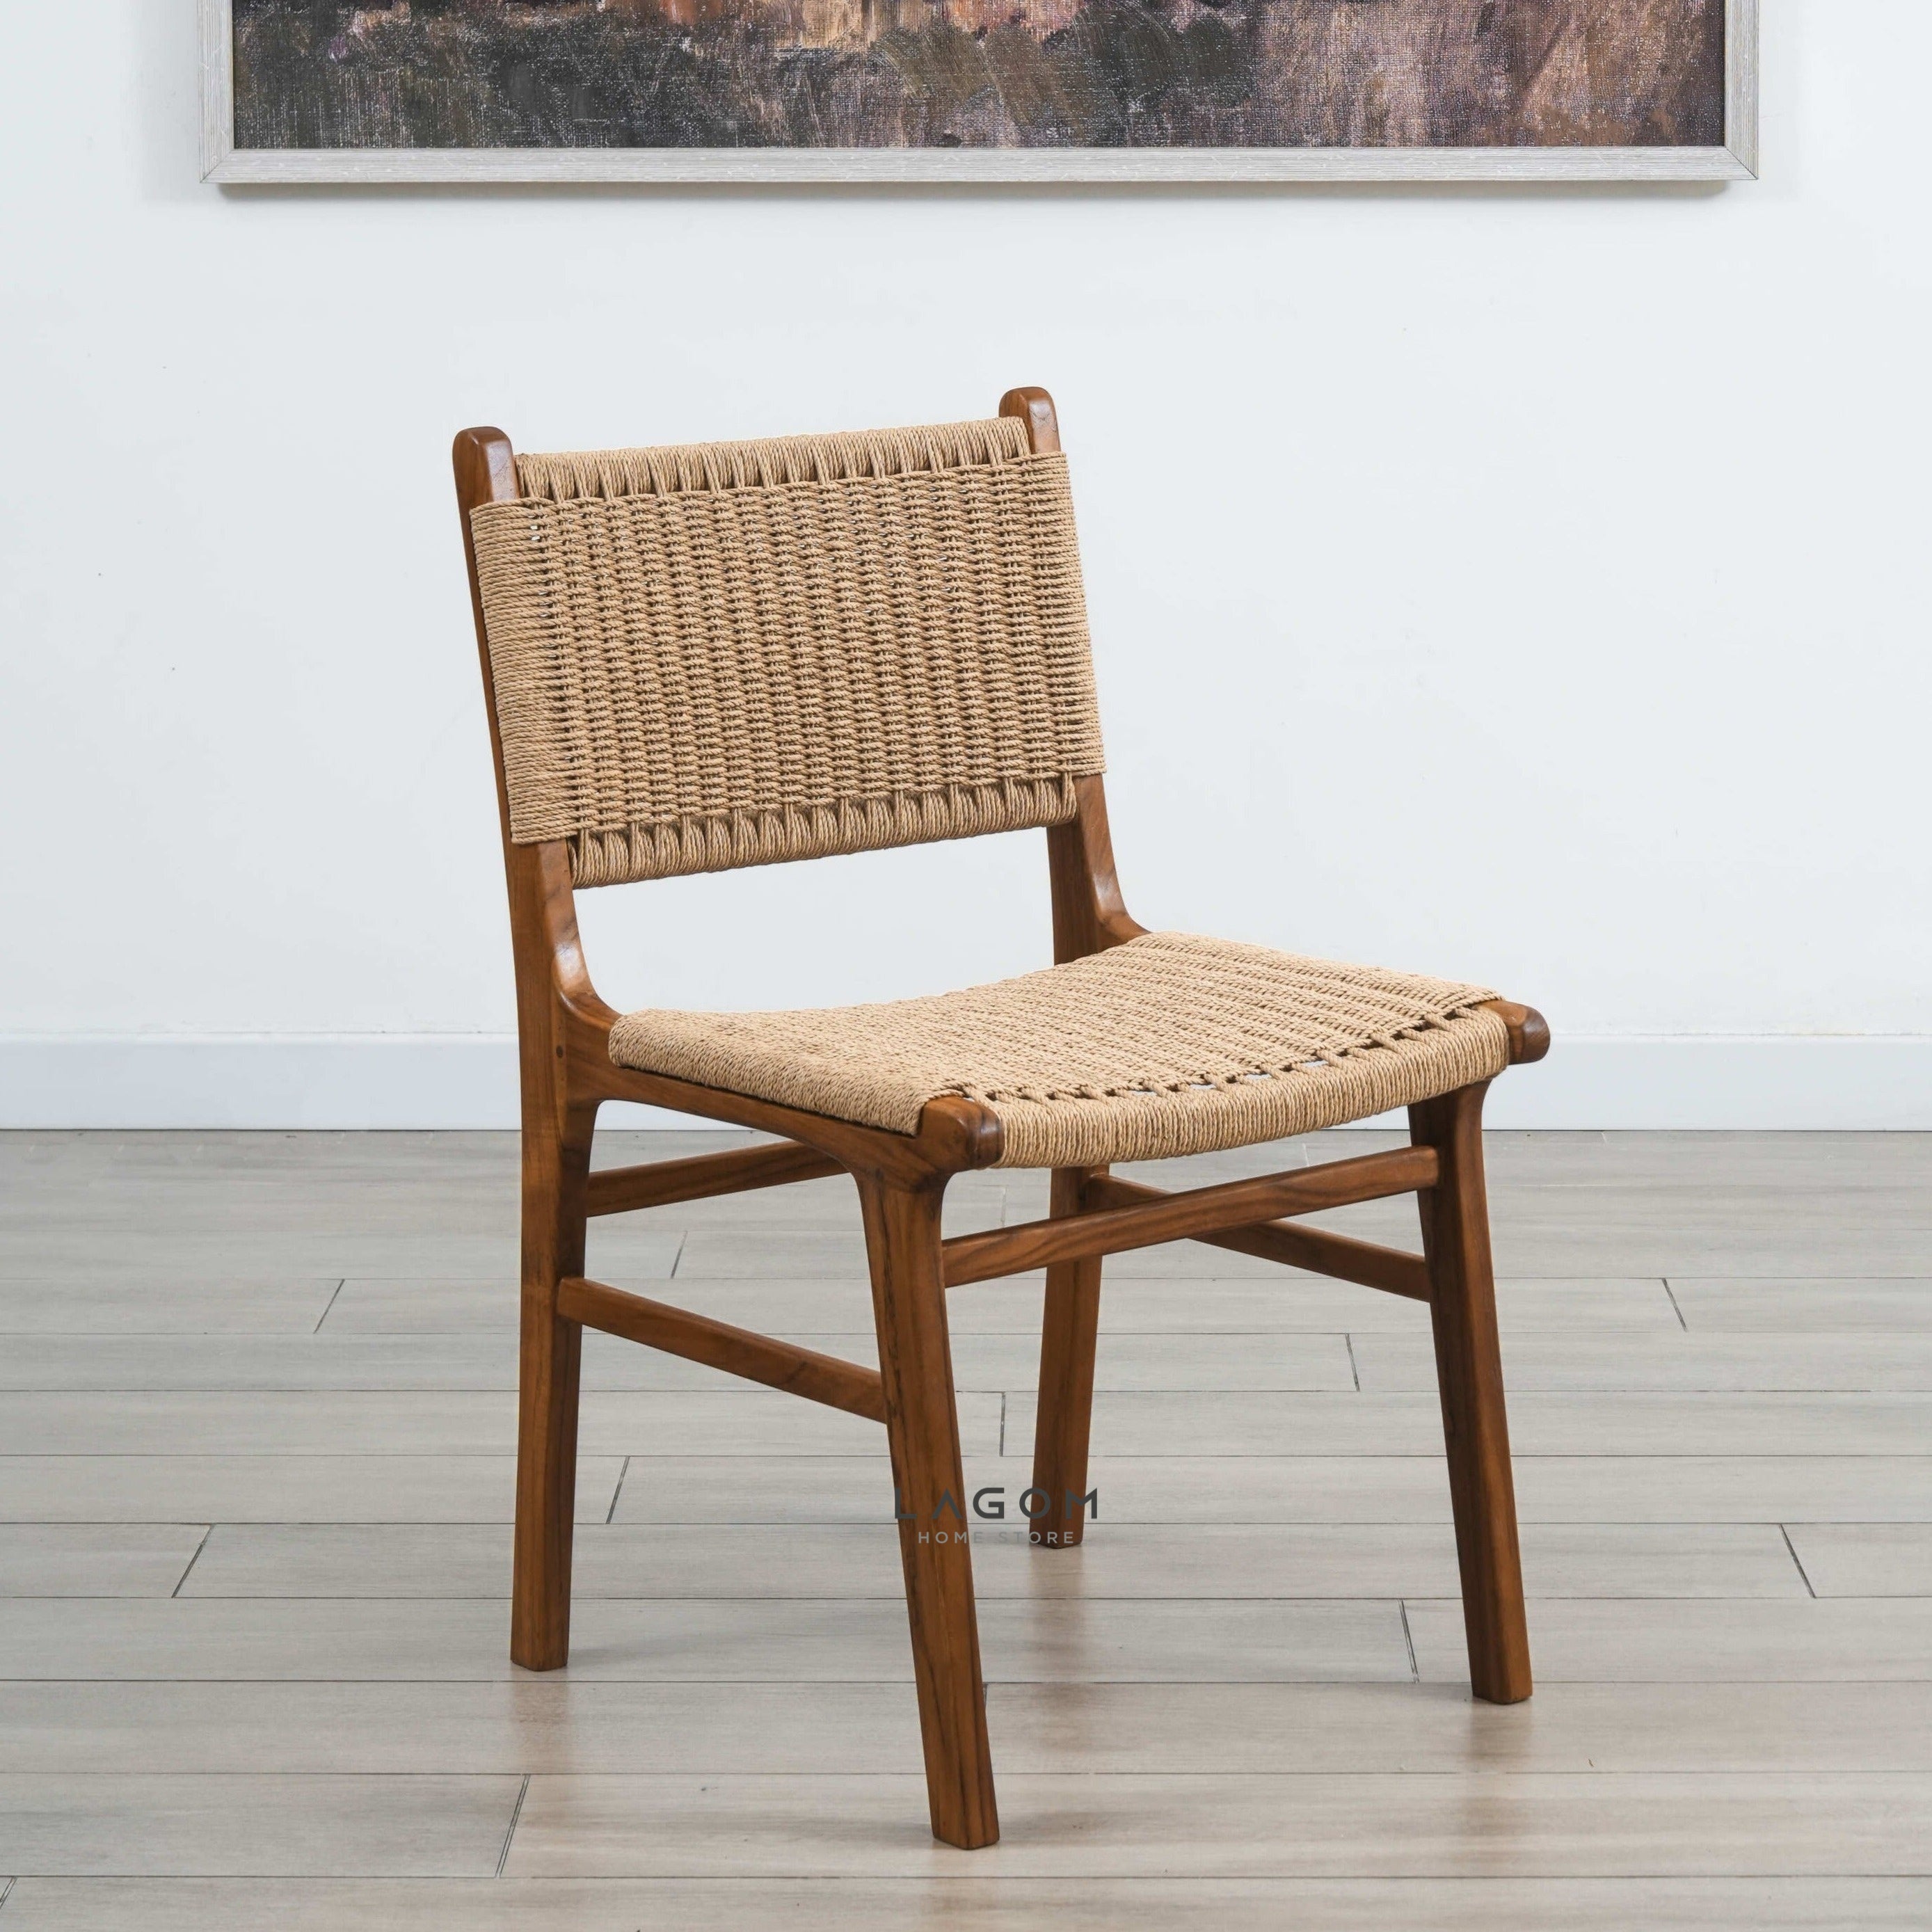 Kursi Kayu Jati Solid dengan Material Premium Loom Chair Lagom Home Store Jati Furnitur Teak Furniture Jakarta